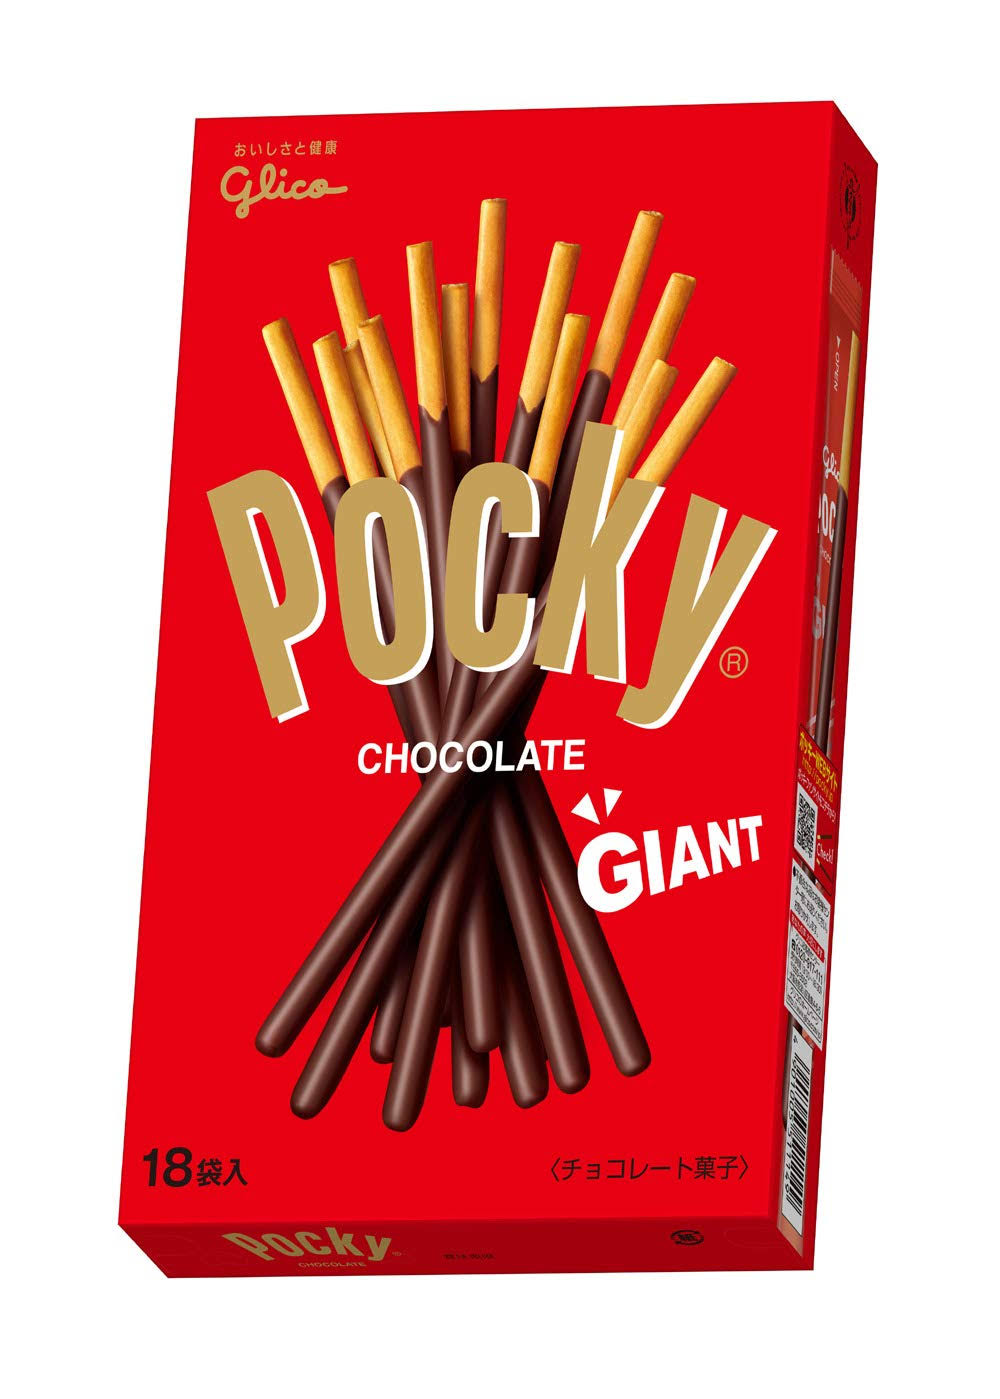 Glico Pocky Giant Chocolate Stick - 143g